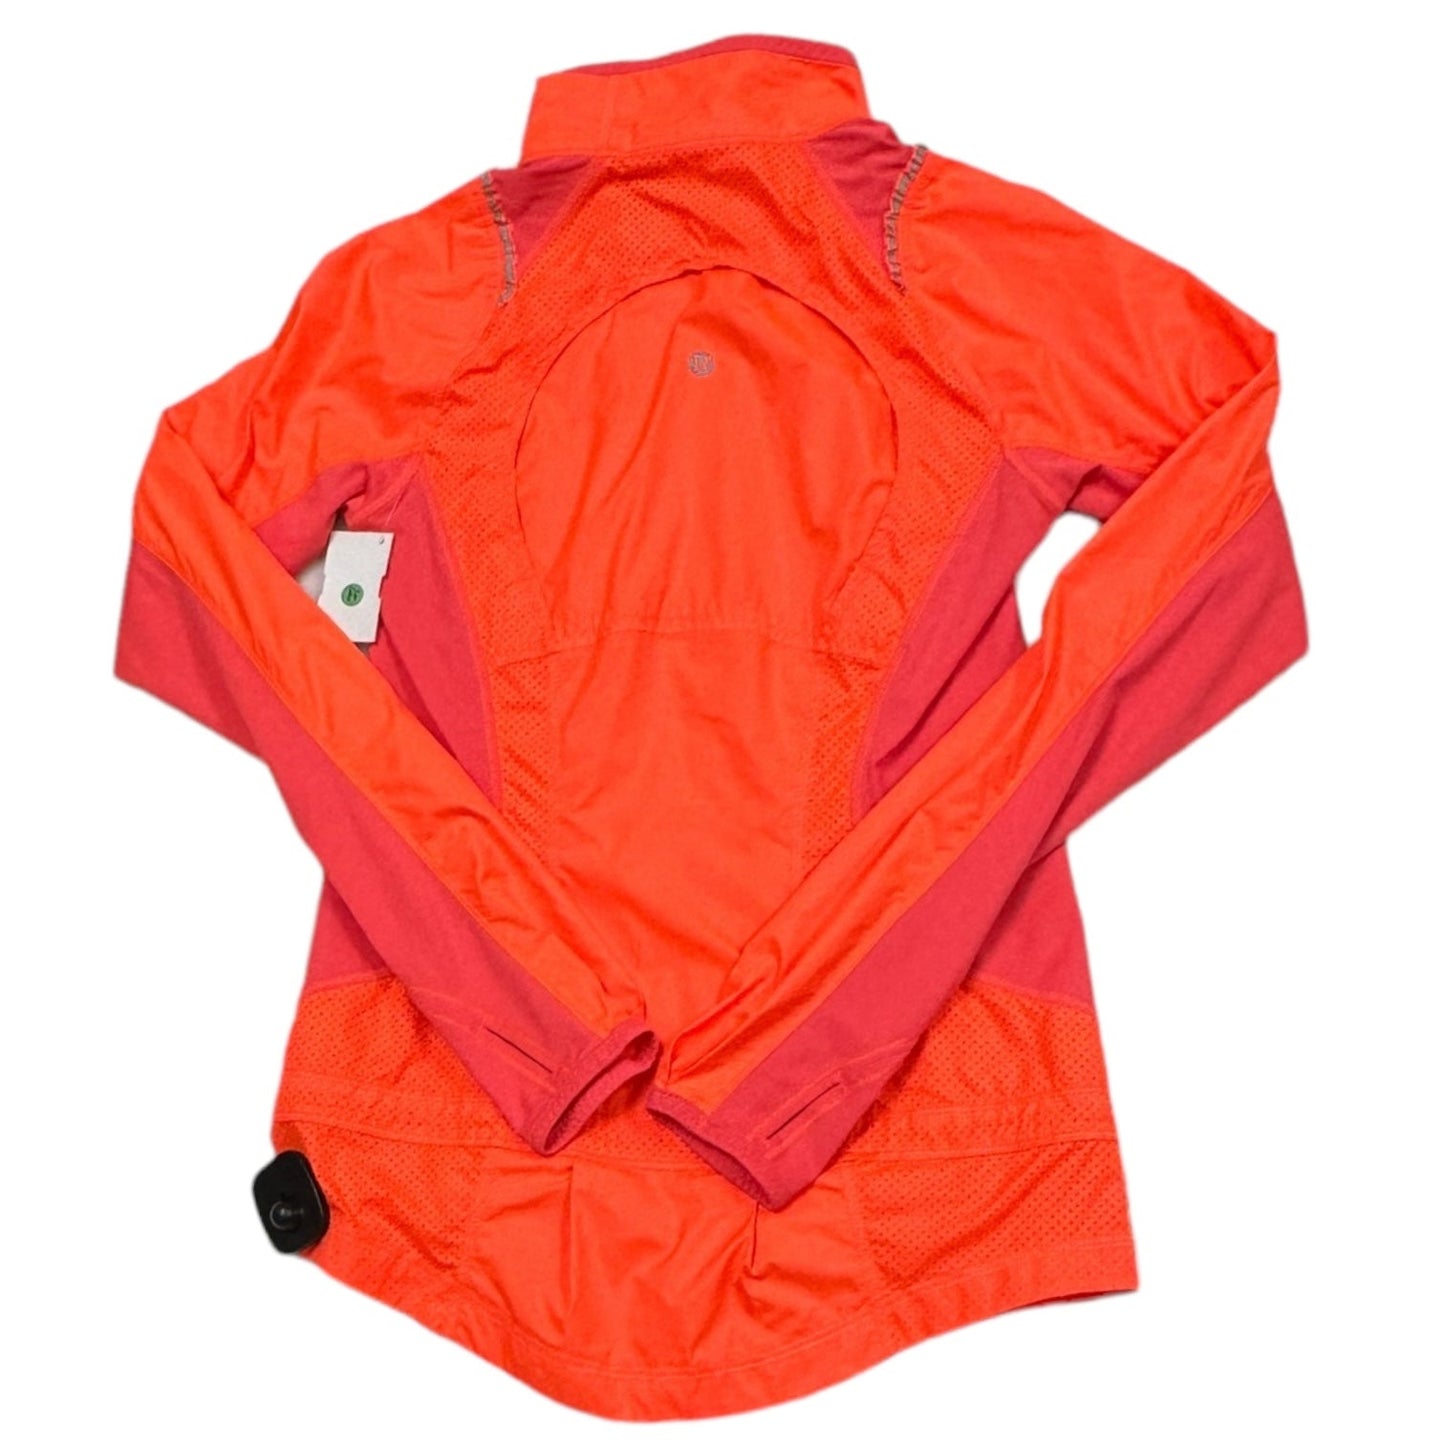 Athletic Jacket By Lululemon  Size: 2